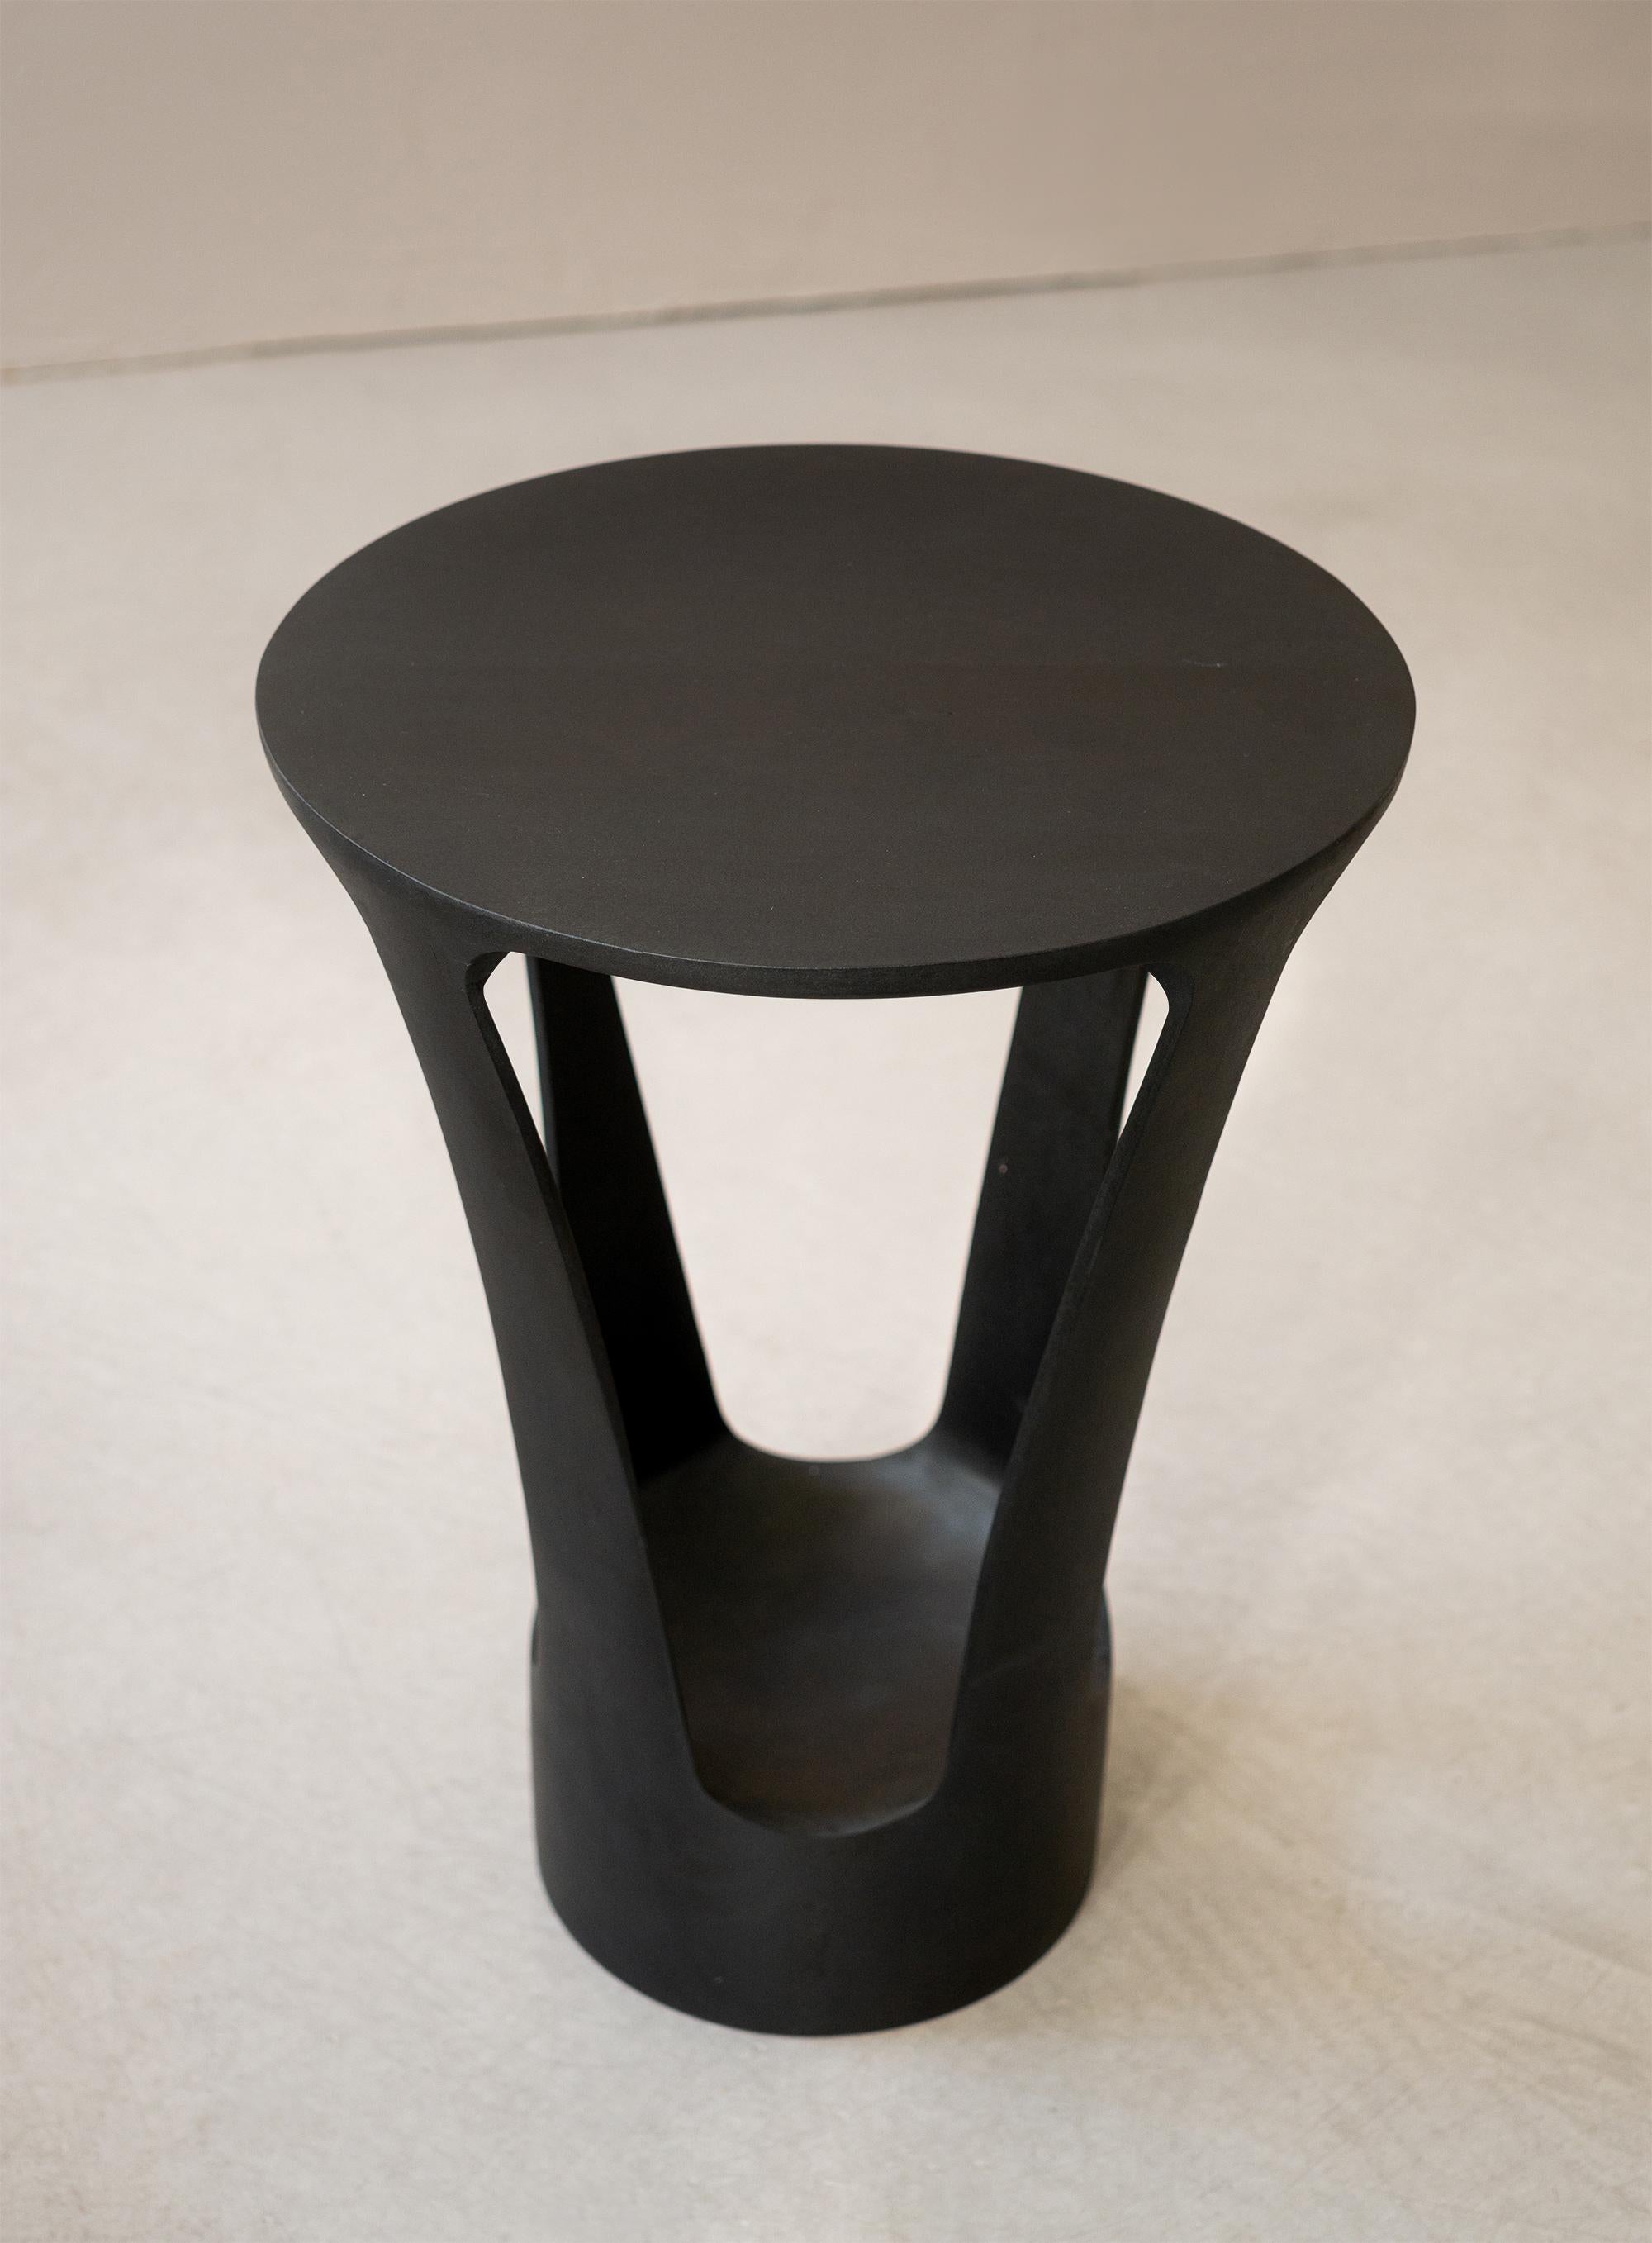 Pétiole-Sockeltisch

Sockeltisch aus getönter Esche, hergestellt von dem Designer Alexandre Labruyère im Jahr 2023. Der Tisch Pétiole ist Teil der Pétiole-Kollektion, die vom natürlichen Prinzip des Blattstiels inspiriert ist, der das Blatt mit dem